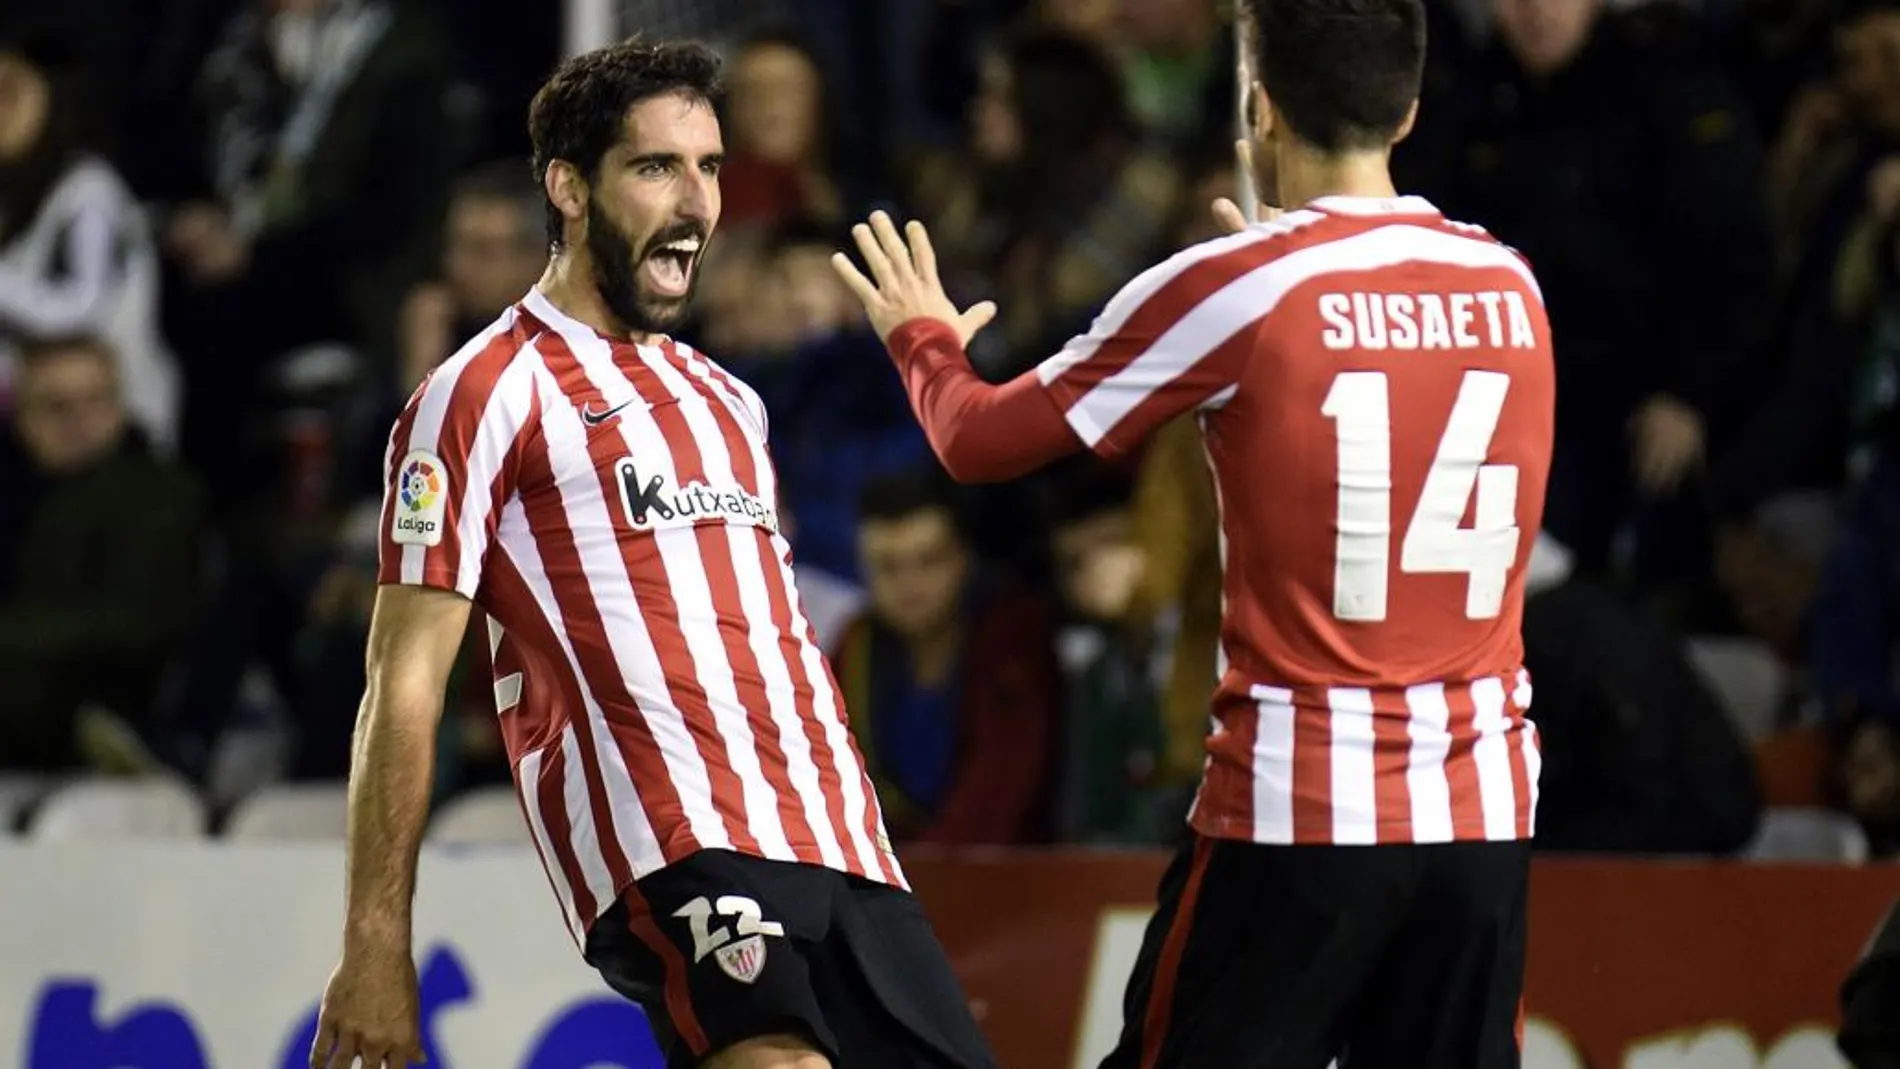 El jugador del Athletic de Bilbao Raúl García (i) celebra con Susaeta tras marcar el segundo gol ante el Racing de Santander